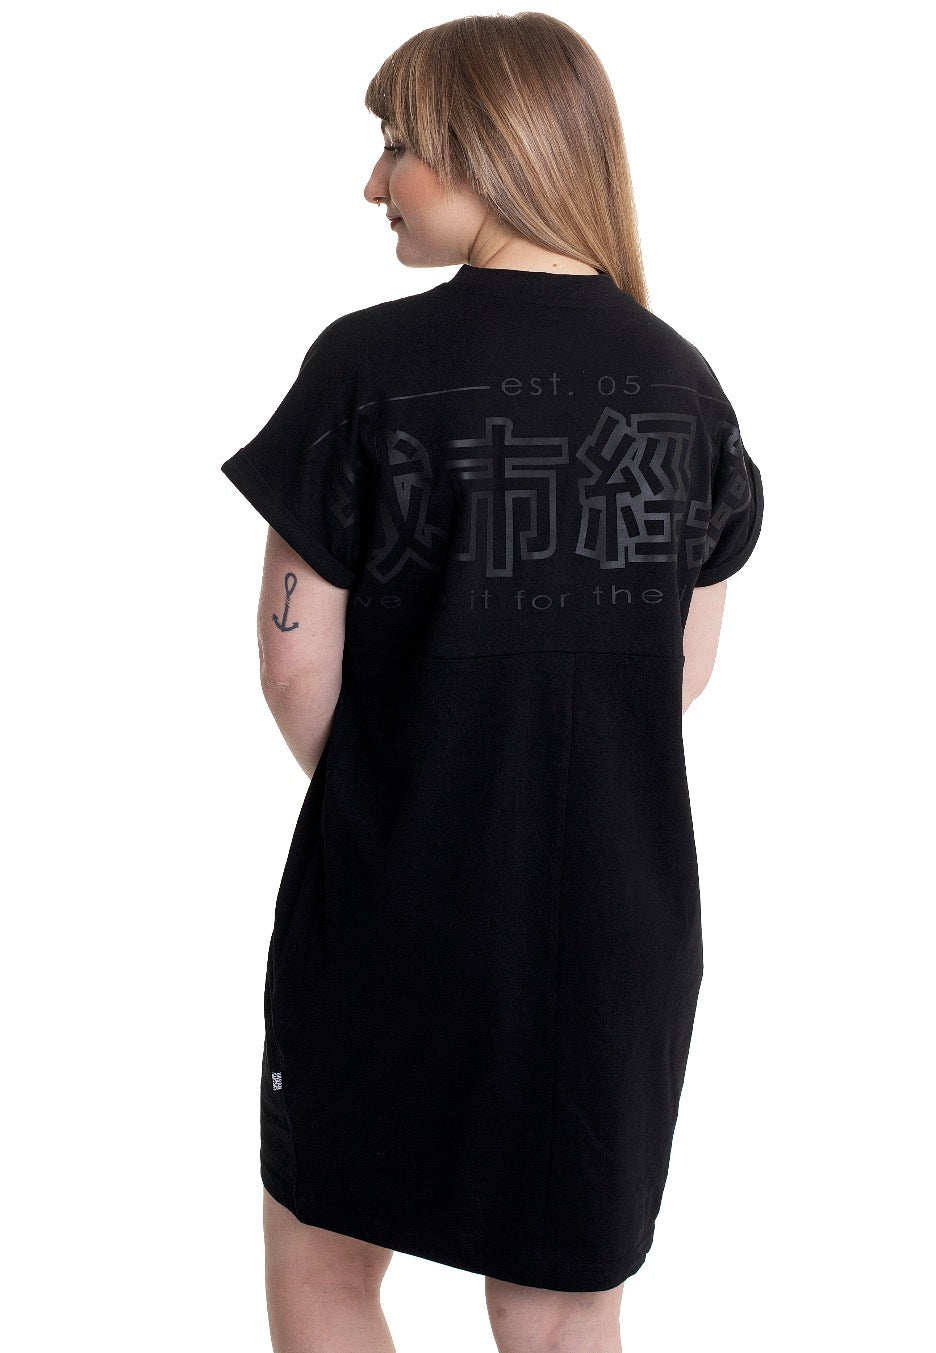 Urban Classics - Ladies Cut On Sleeve Printed Tee Black/Black - Dress